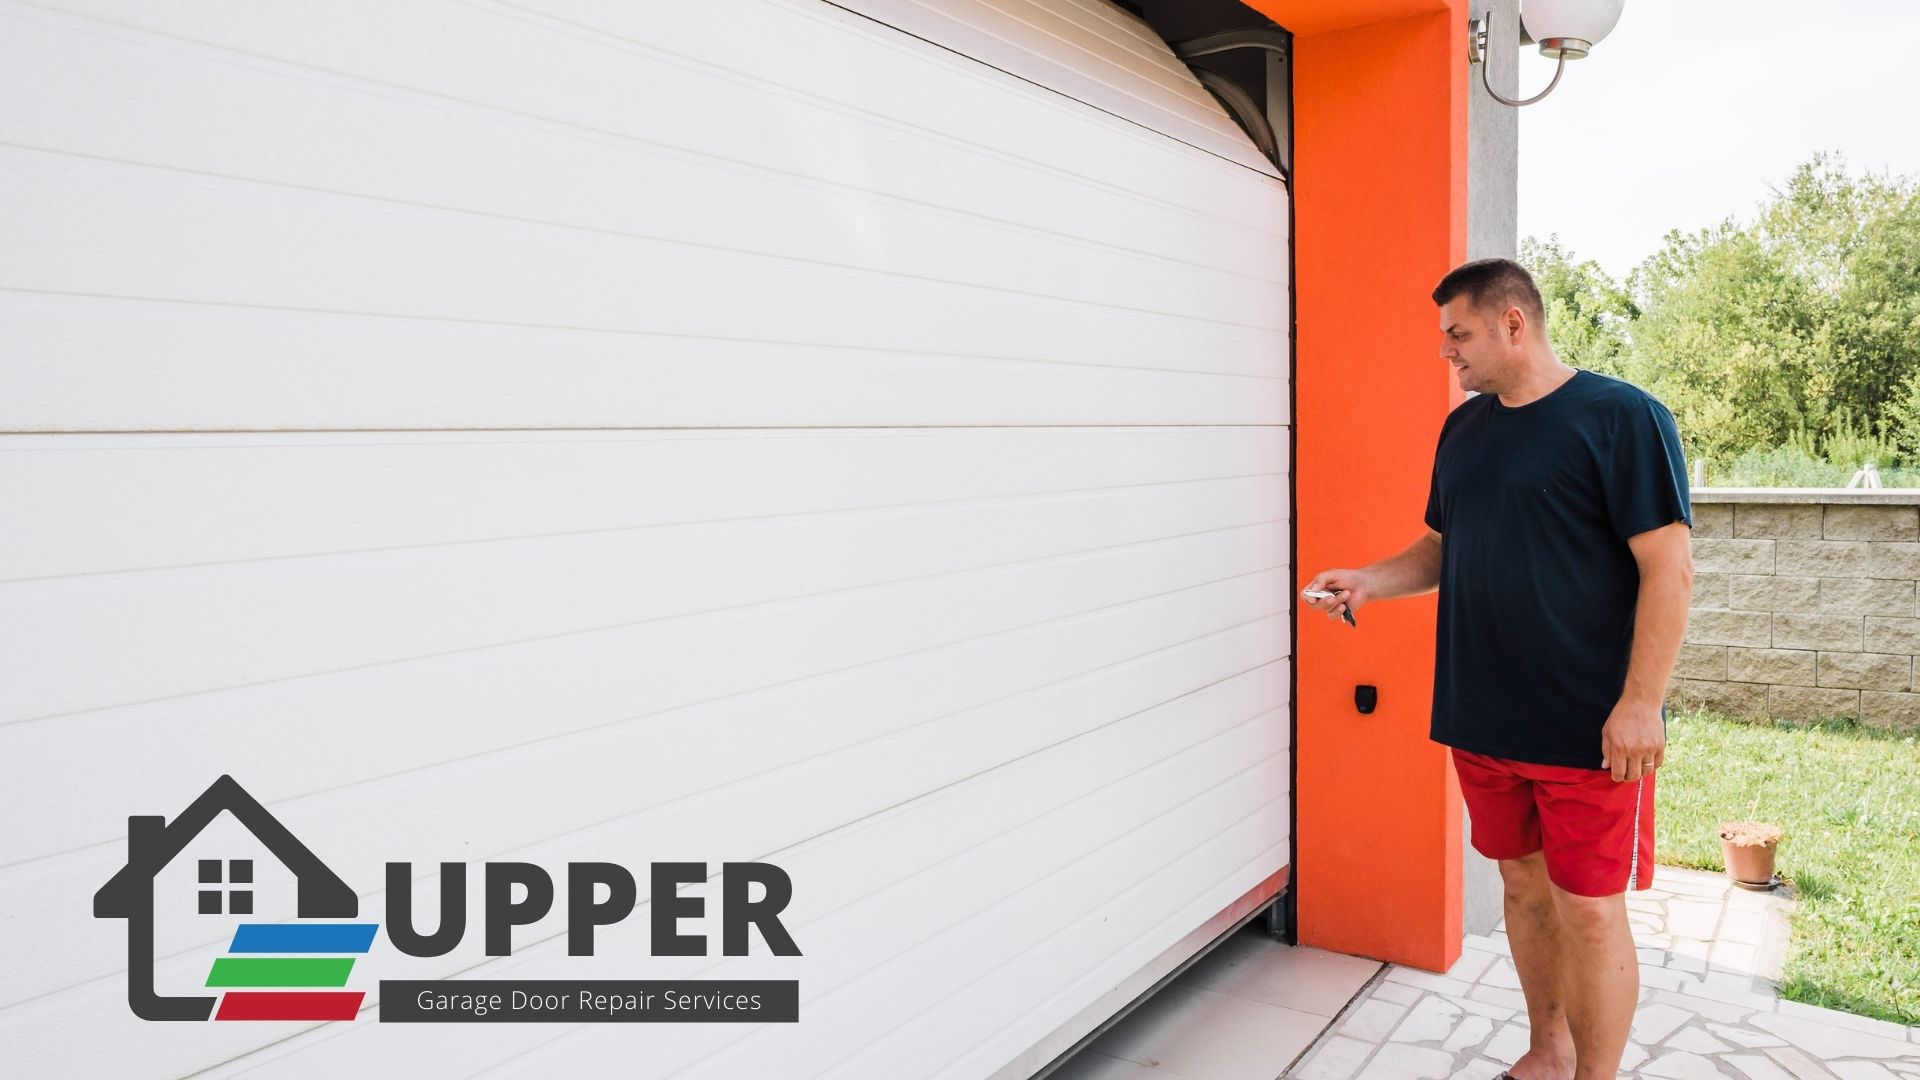 Upper Garage Door Repair Services